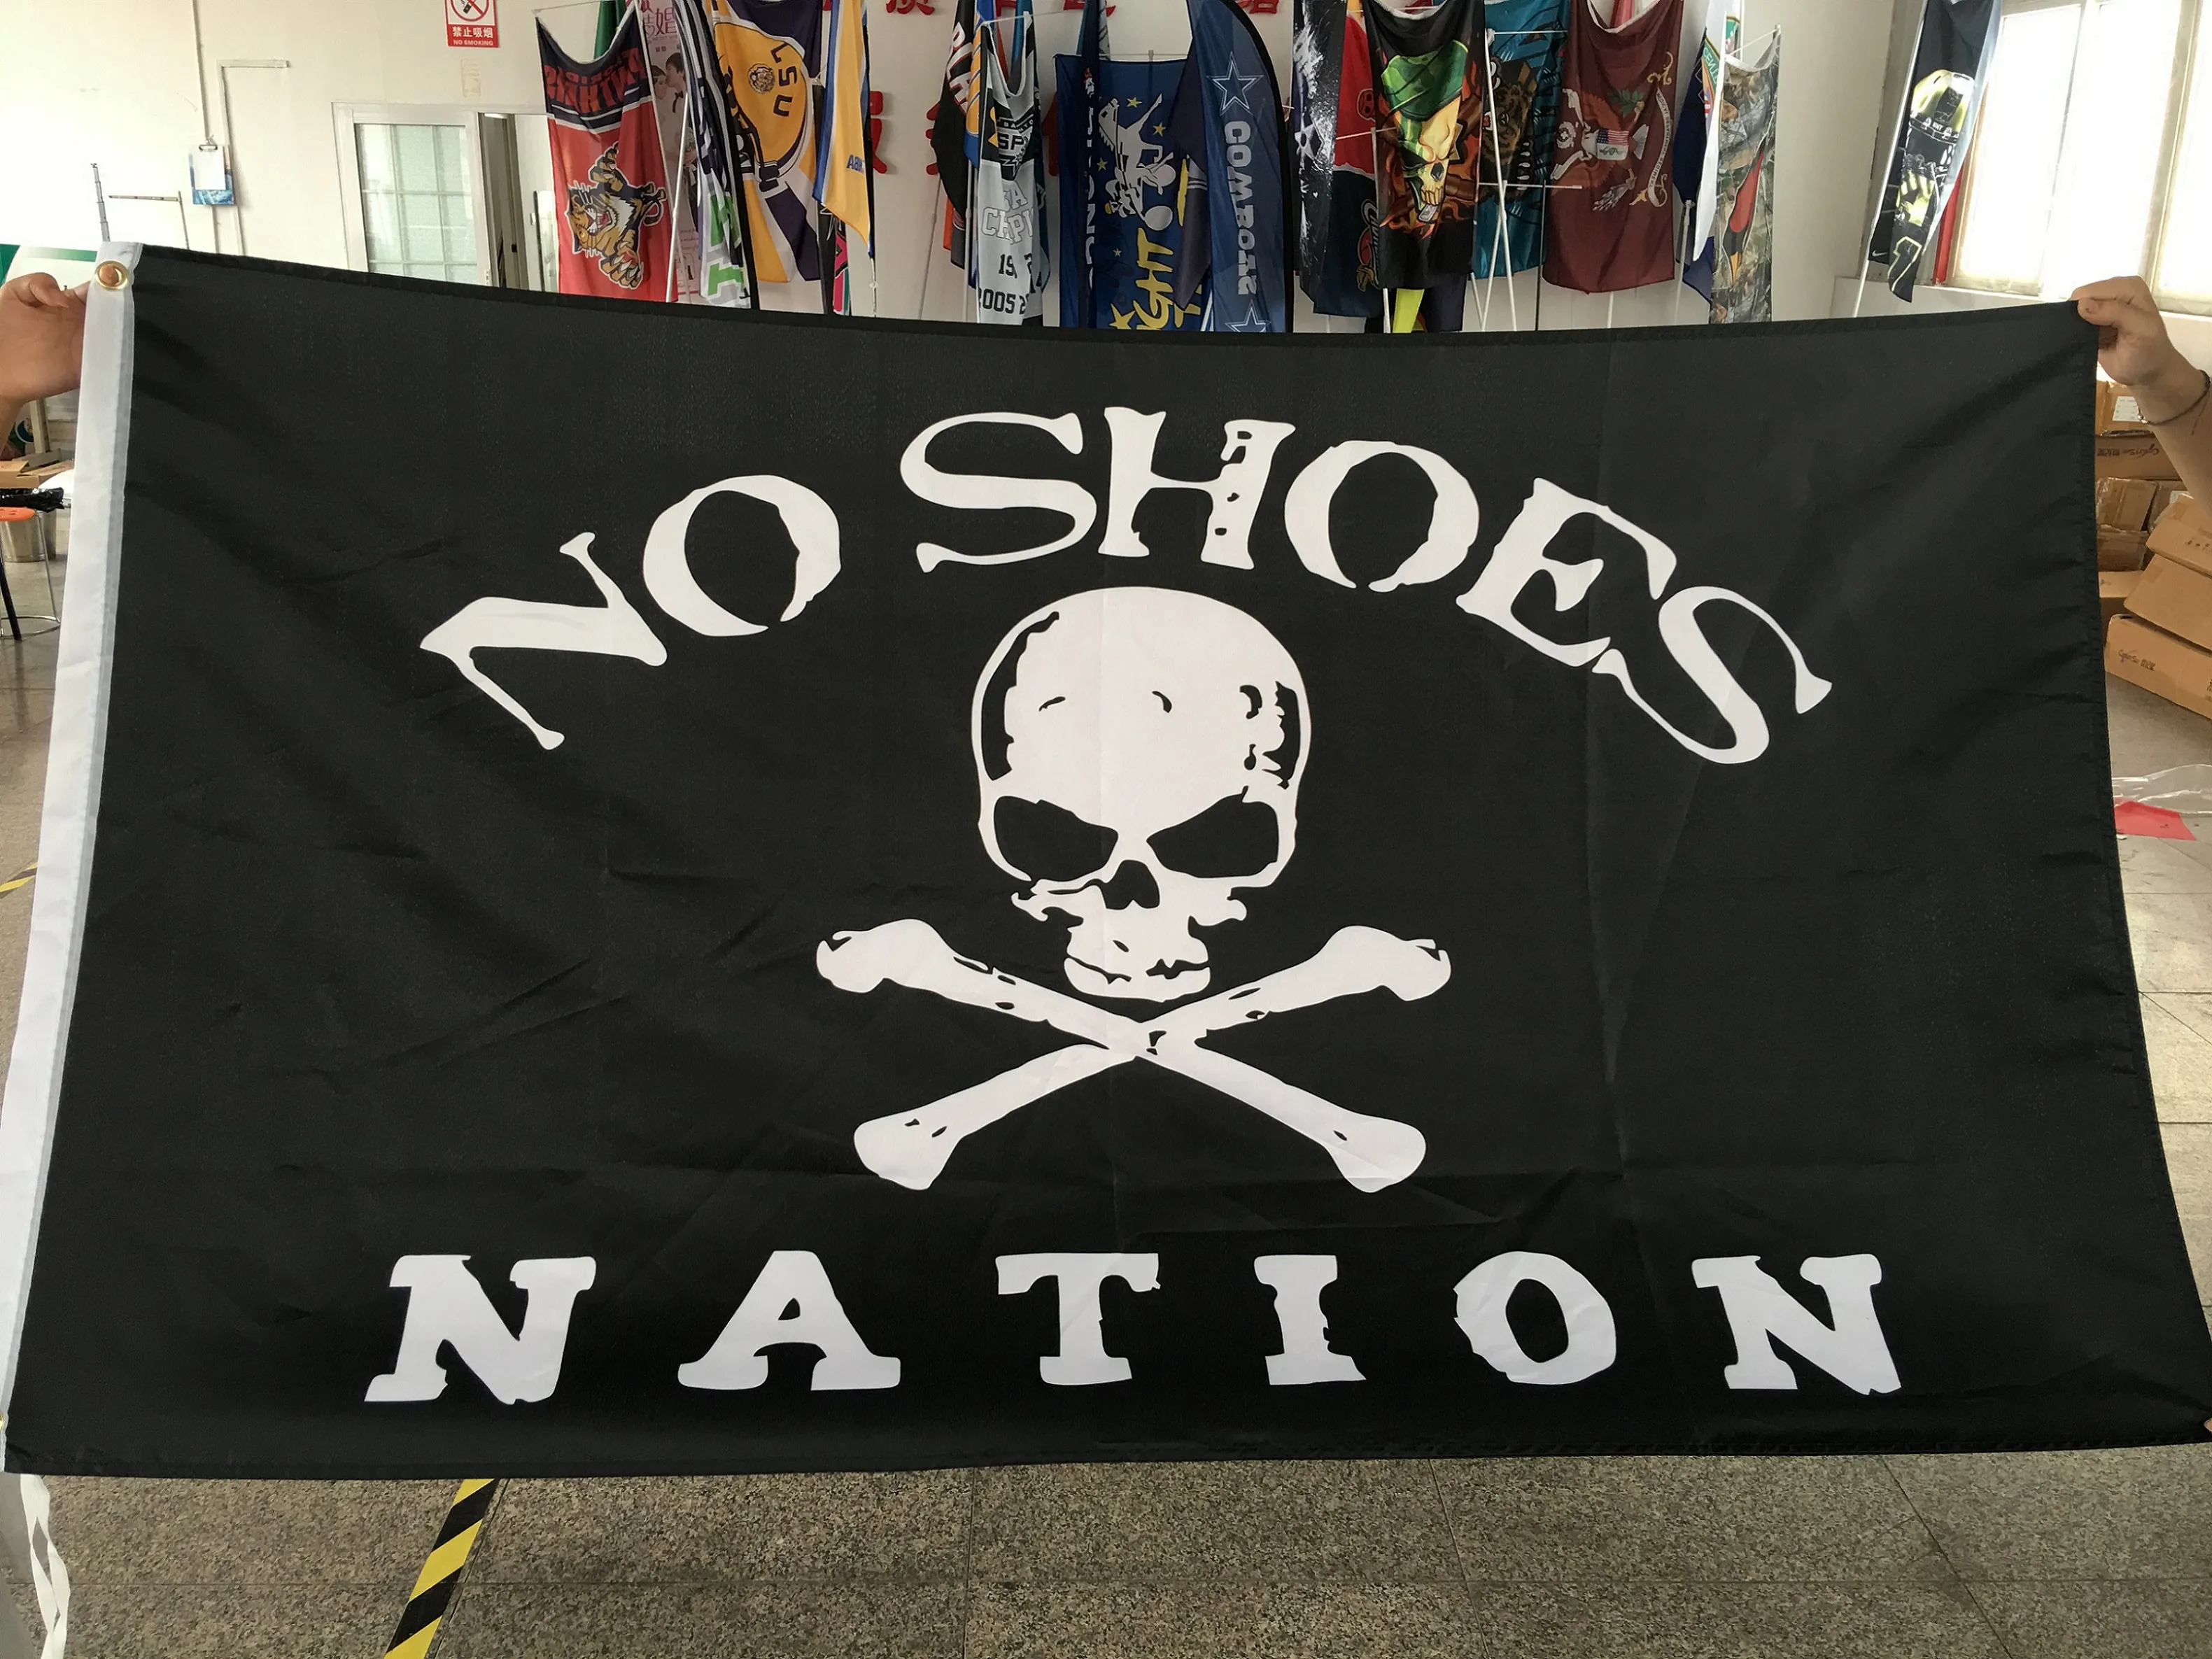 Нация Нет Обувь Пользовательский флаг Летающий дизайн 3x5 FT 100D полиэстер баннеры с двумя металлическими втулками